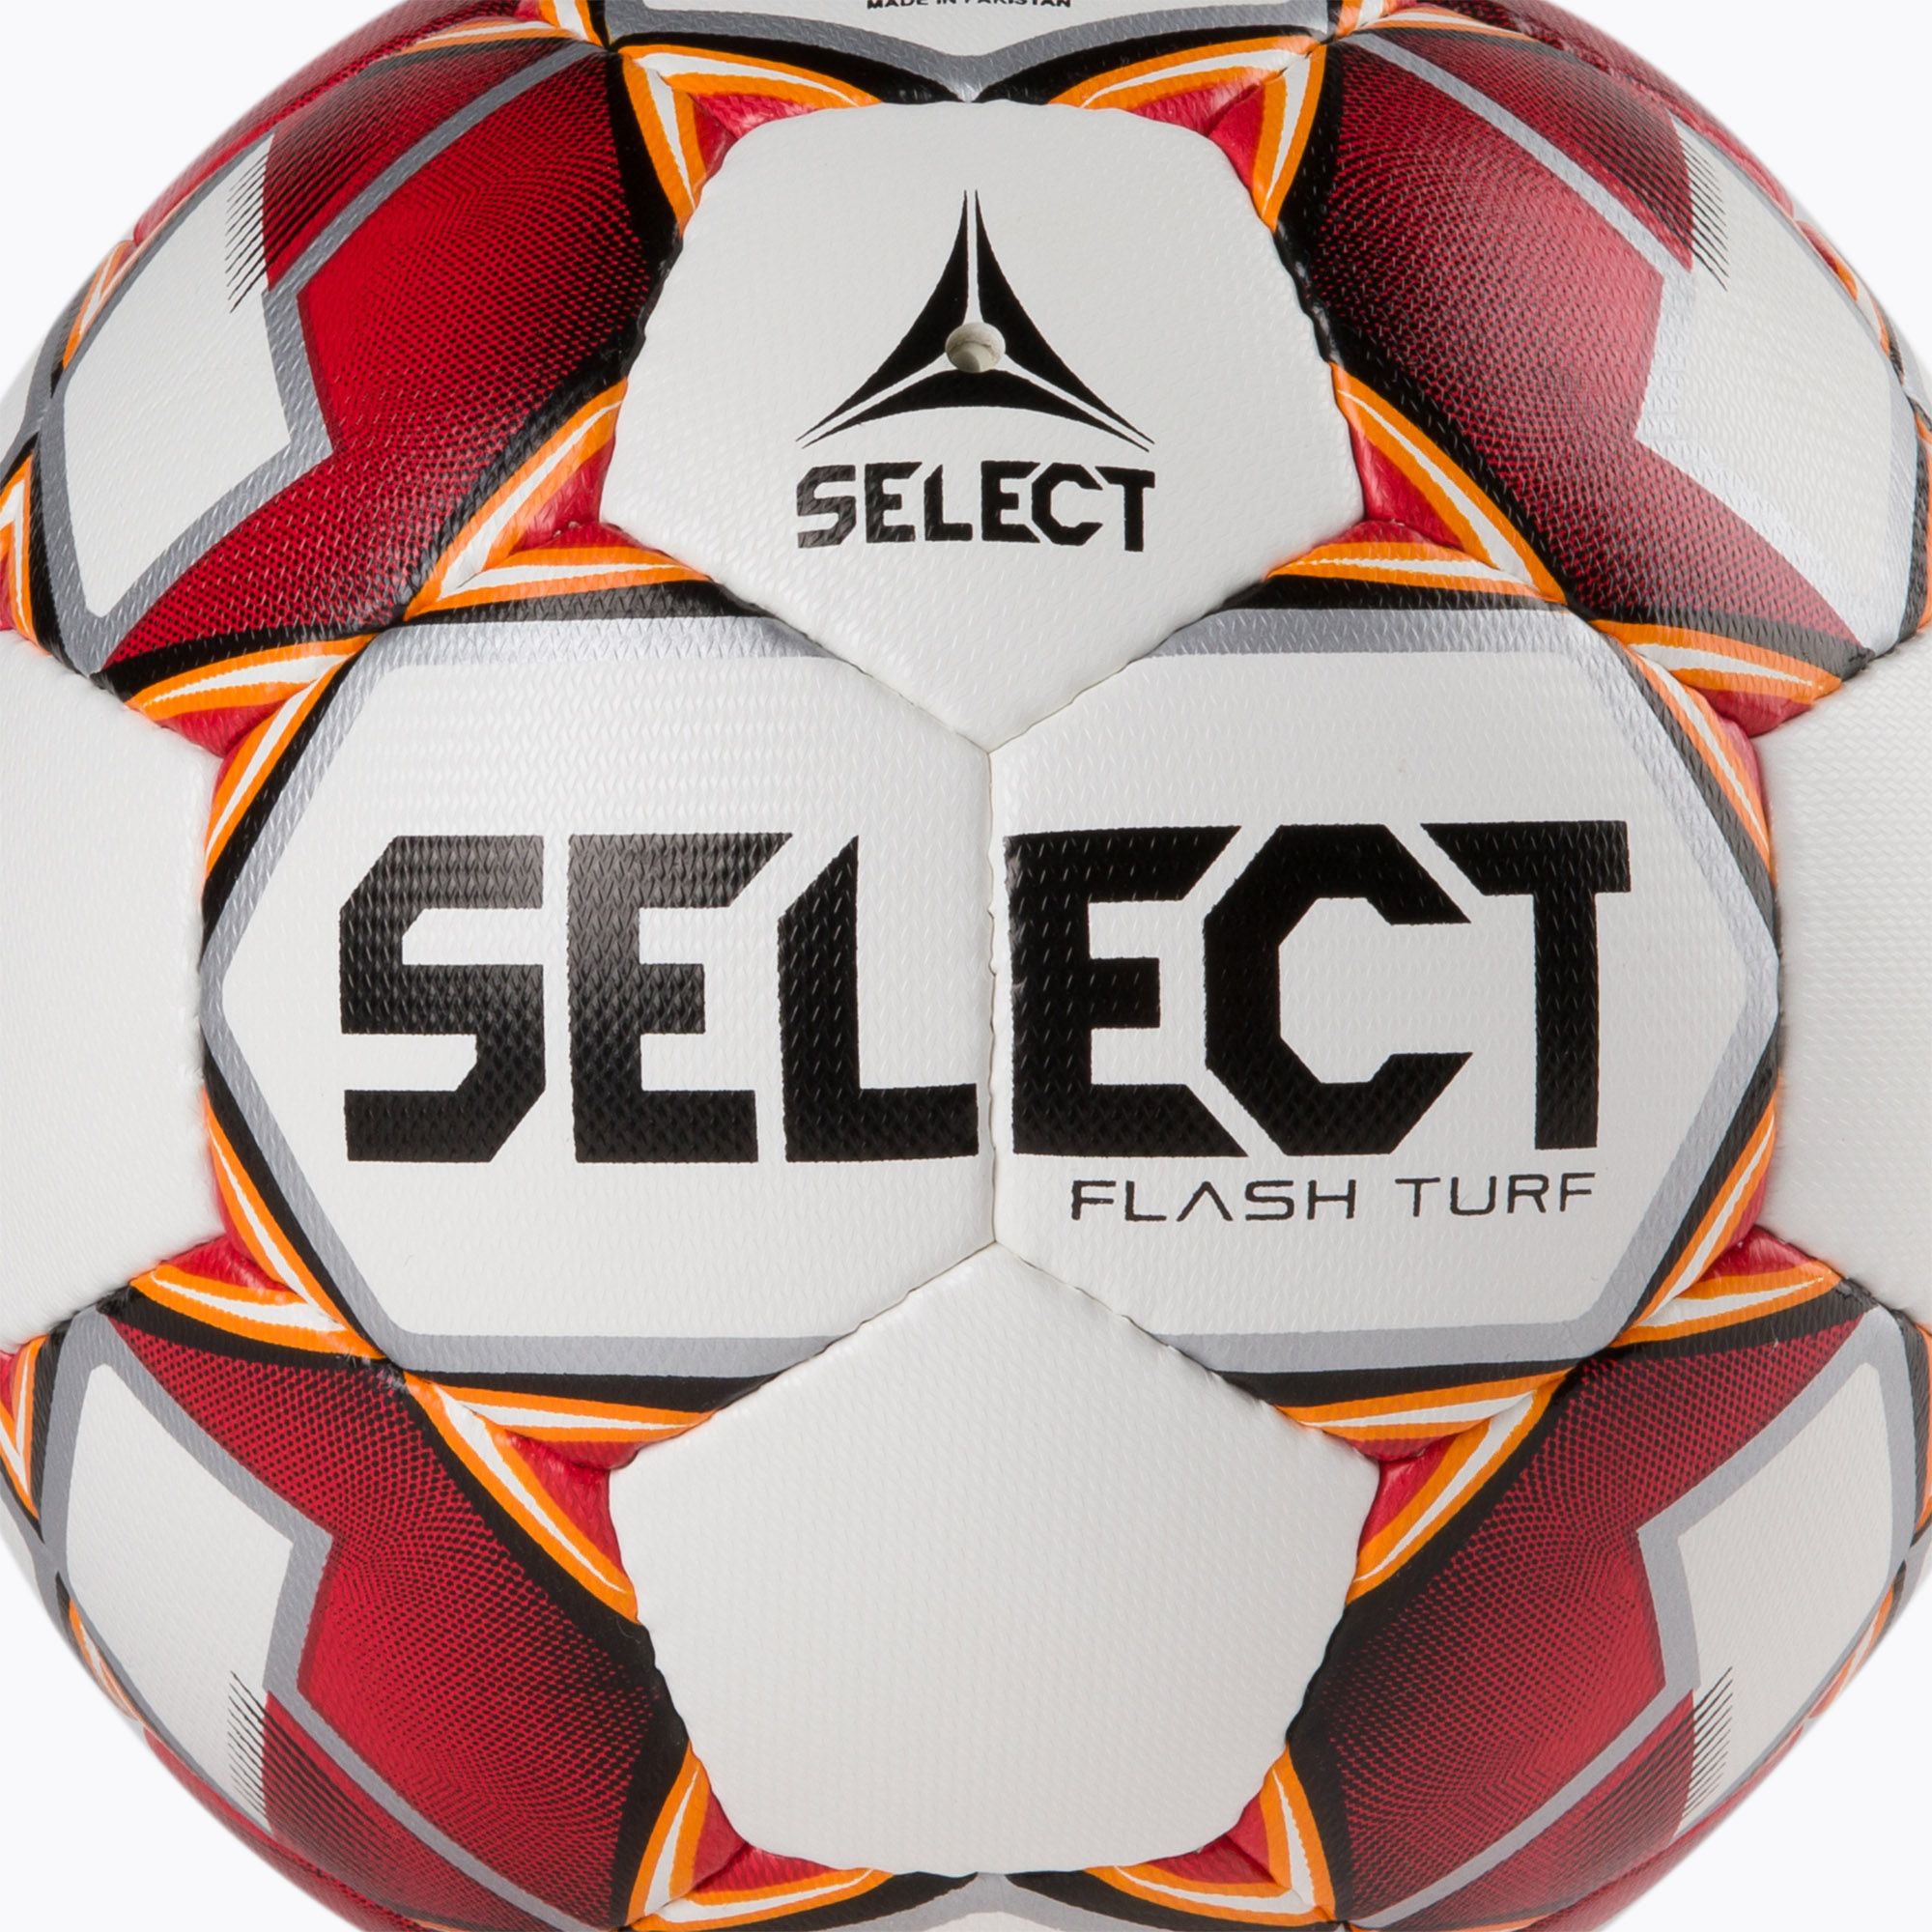 Piłka do piłki nożnej SELECT Flash Turf 2019 0574046003 rozmiar 4 zdjęcie nr 3